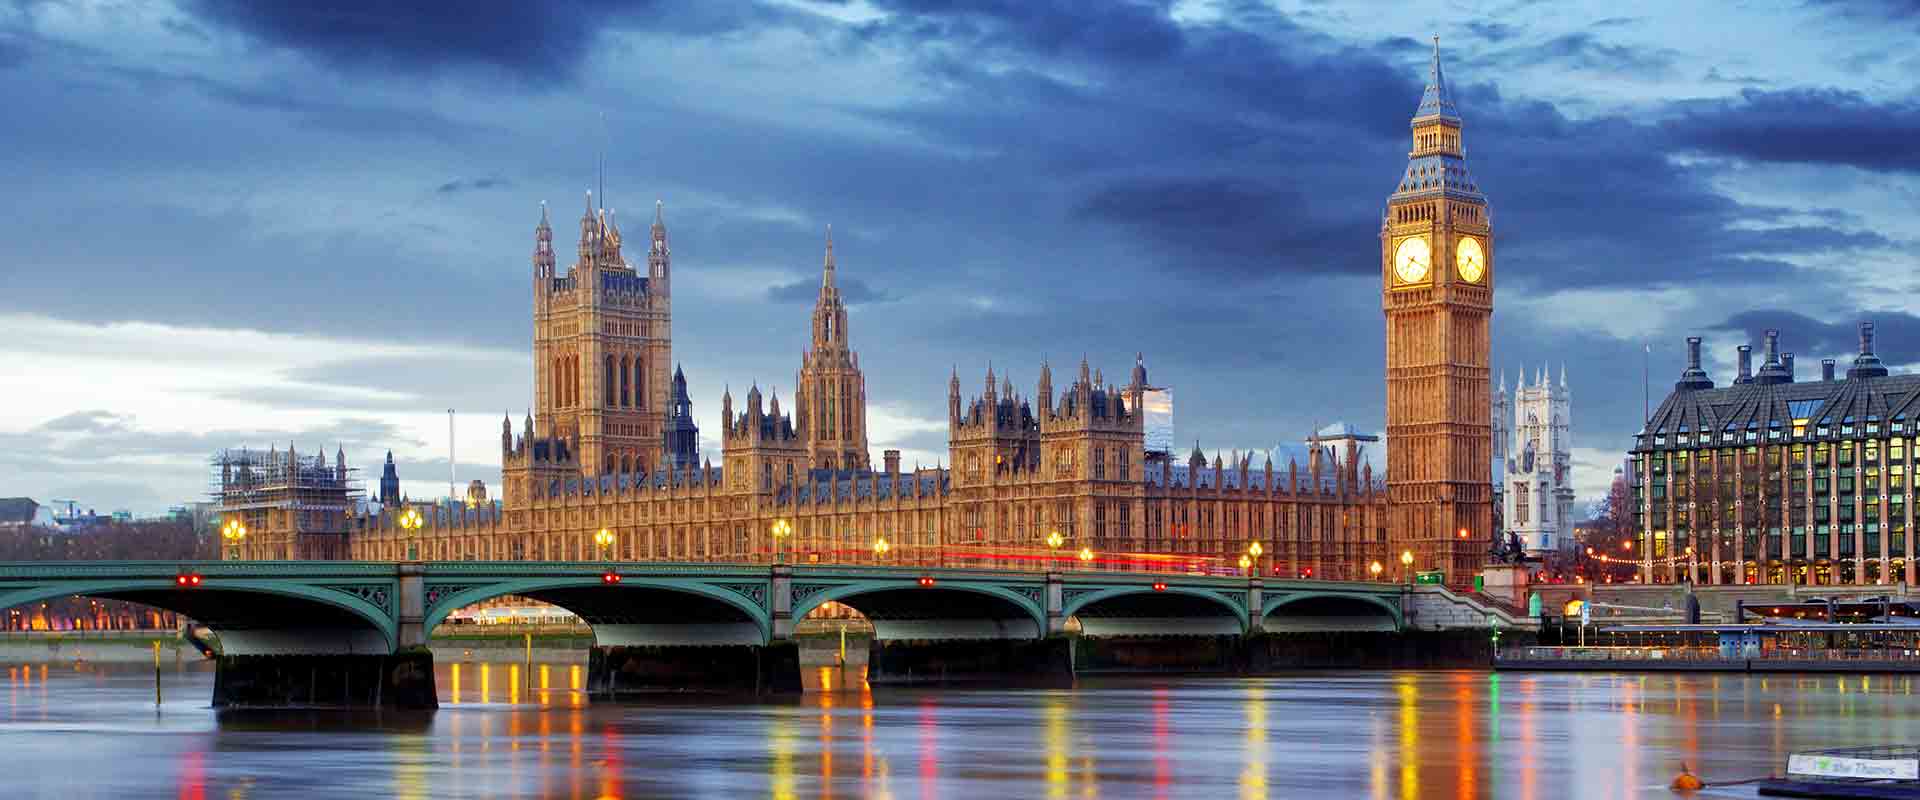 felix-reisen-busreisen-stage-grossbritannien-london-big-ben-and-houses-of-parliament-62913588